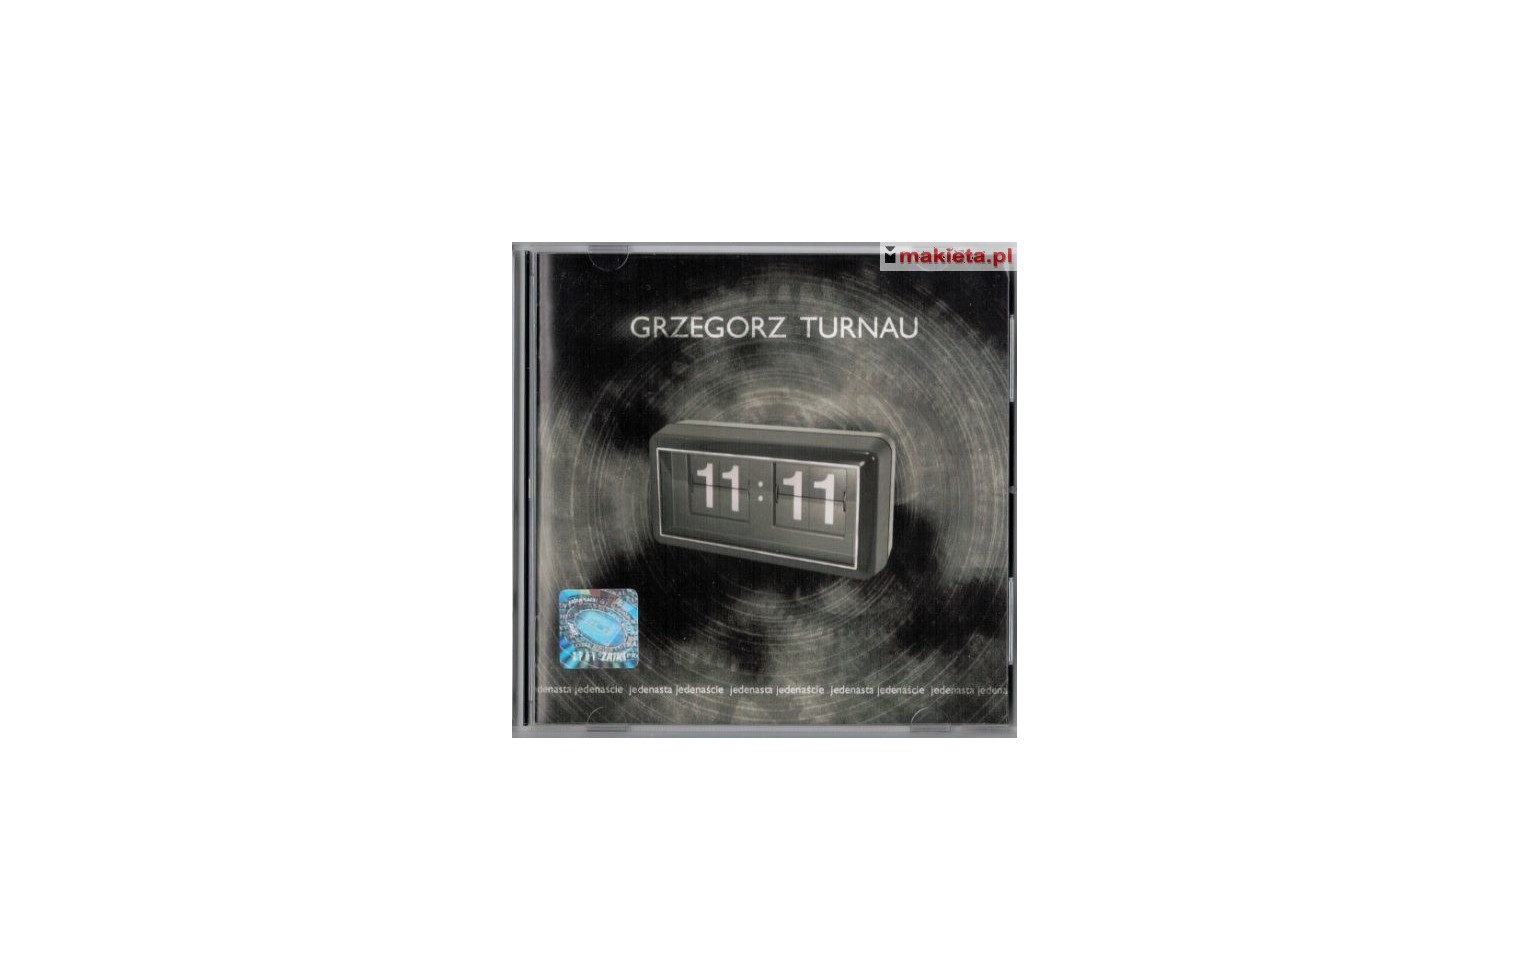 Grzegorz Turnau "11:11", CD.